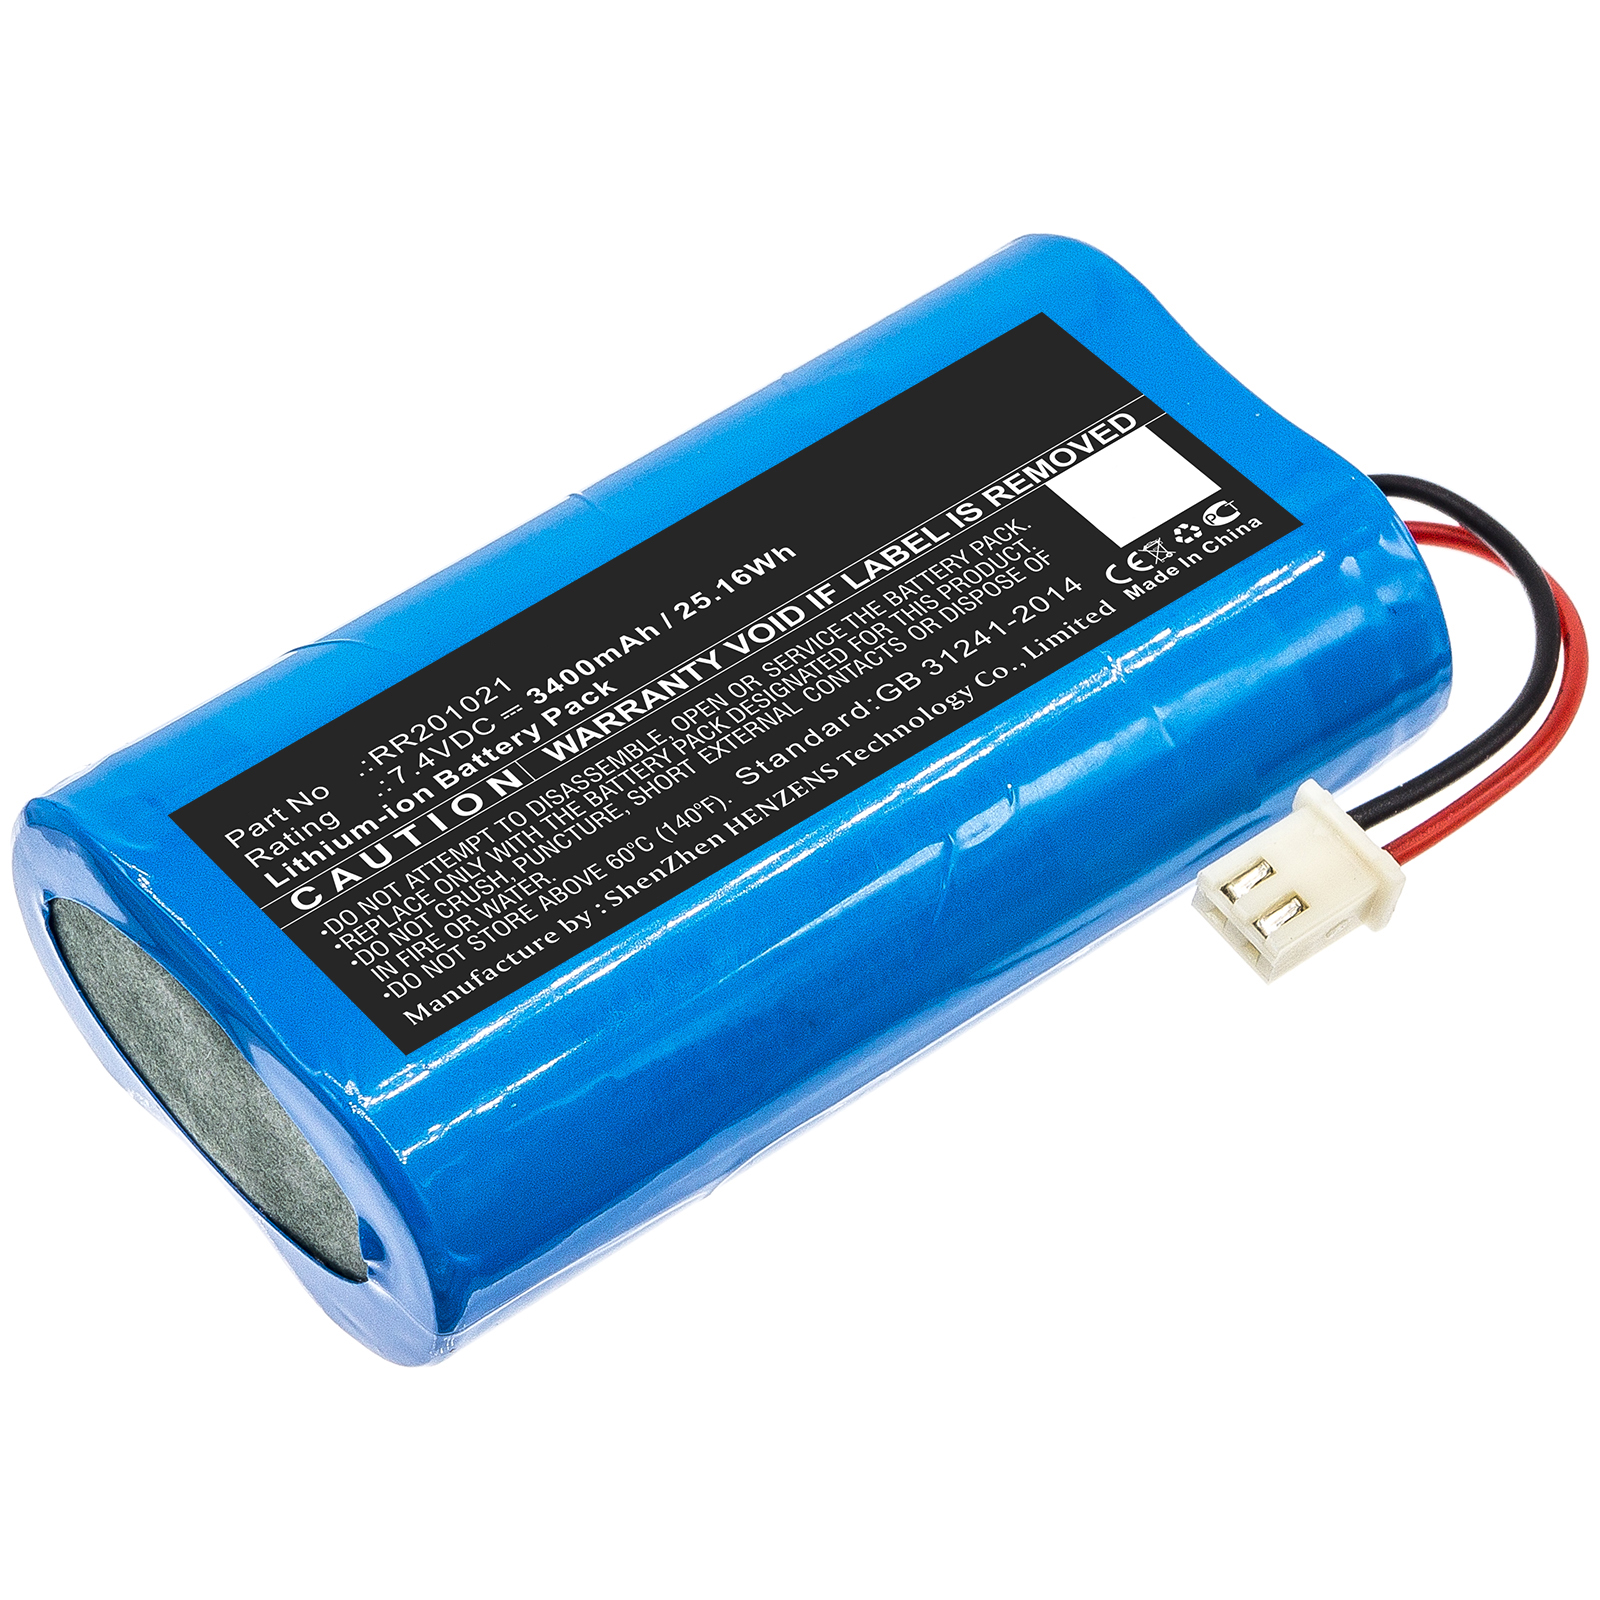 Batteries for FusionEquipment